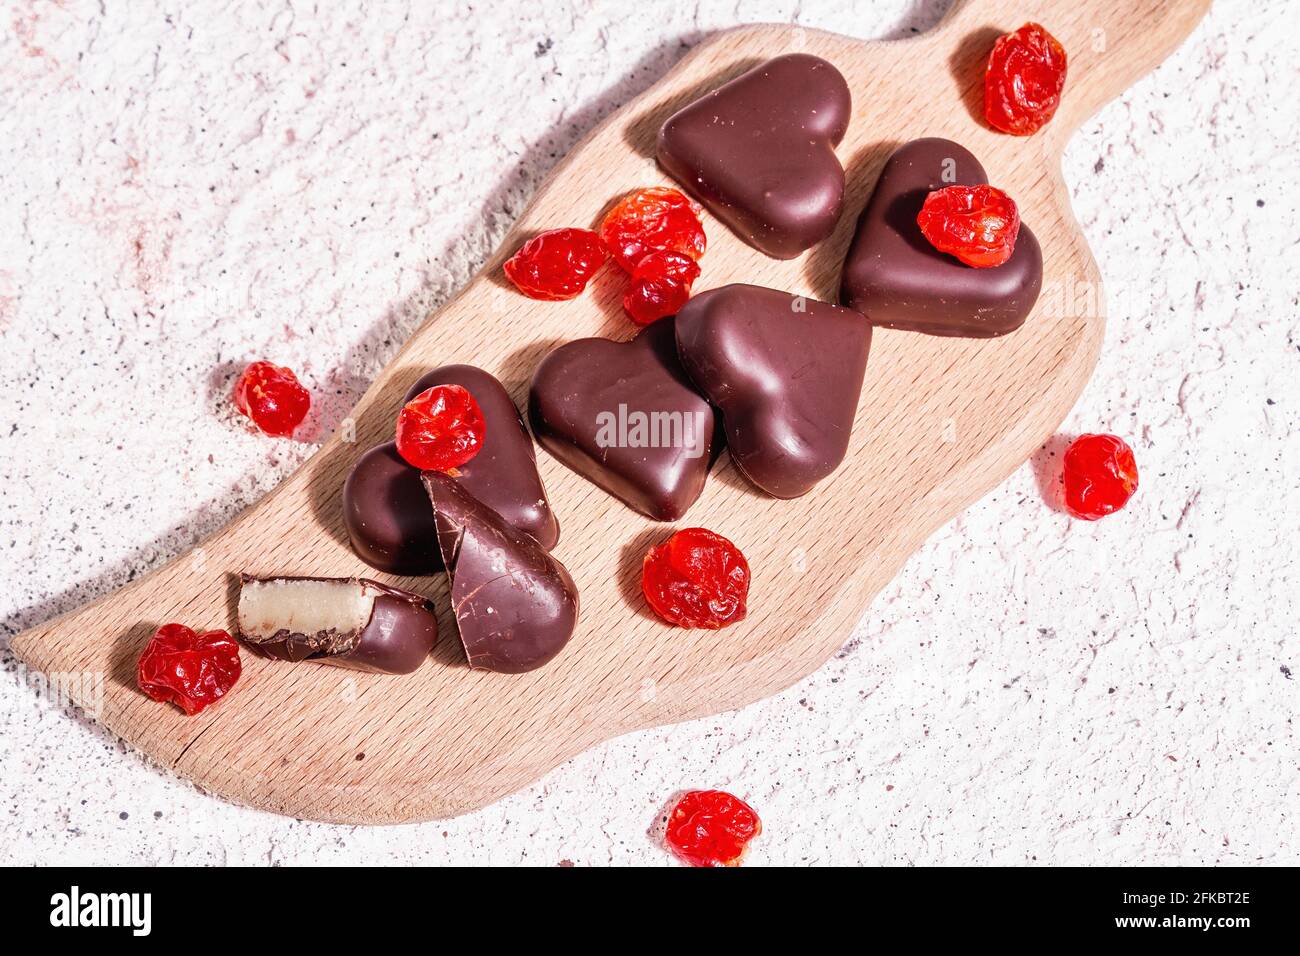 San Valentino, Caramelle a Forma Di Cuore Al Cioccolato Fotografia